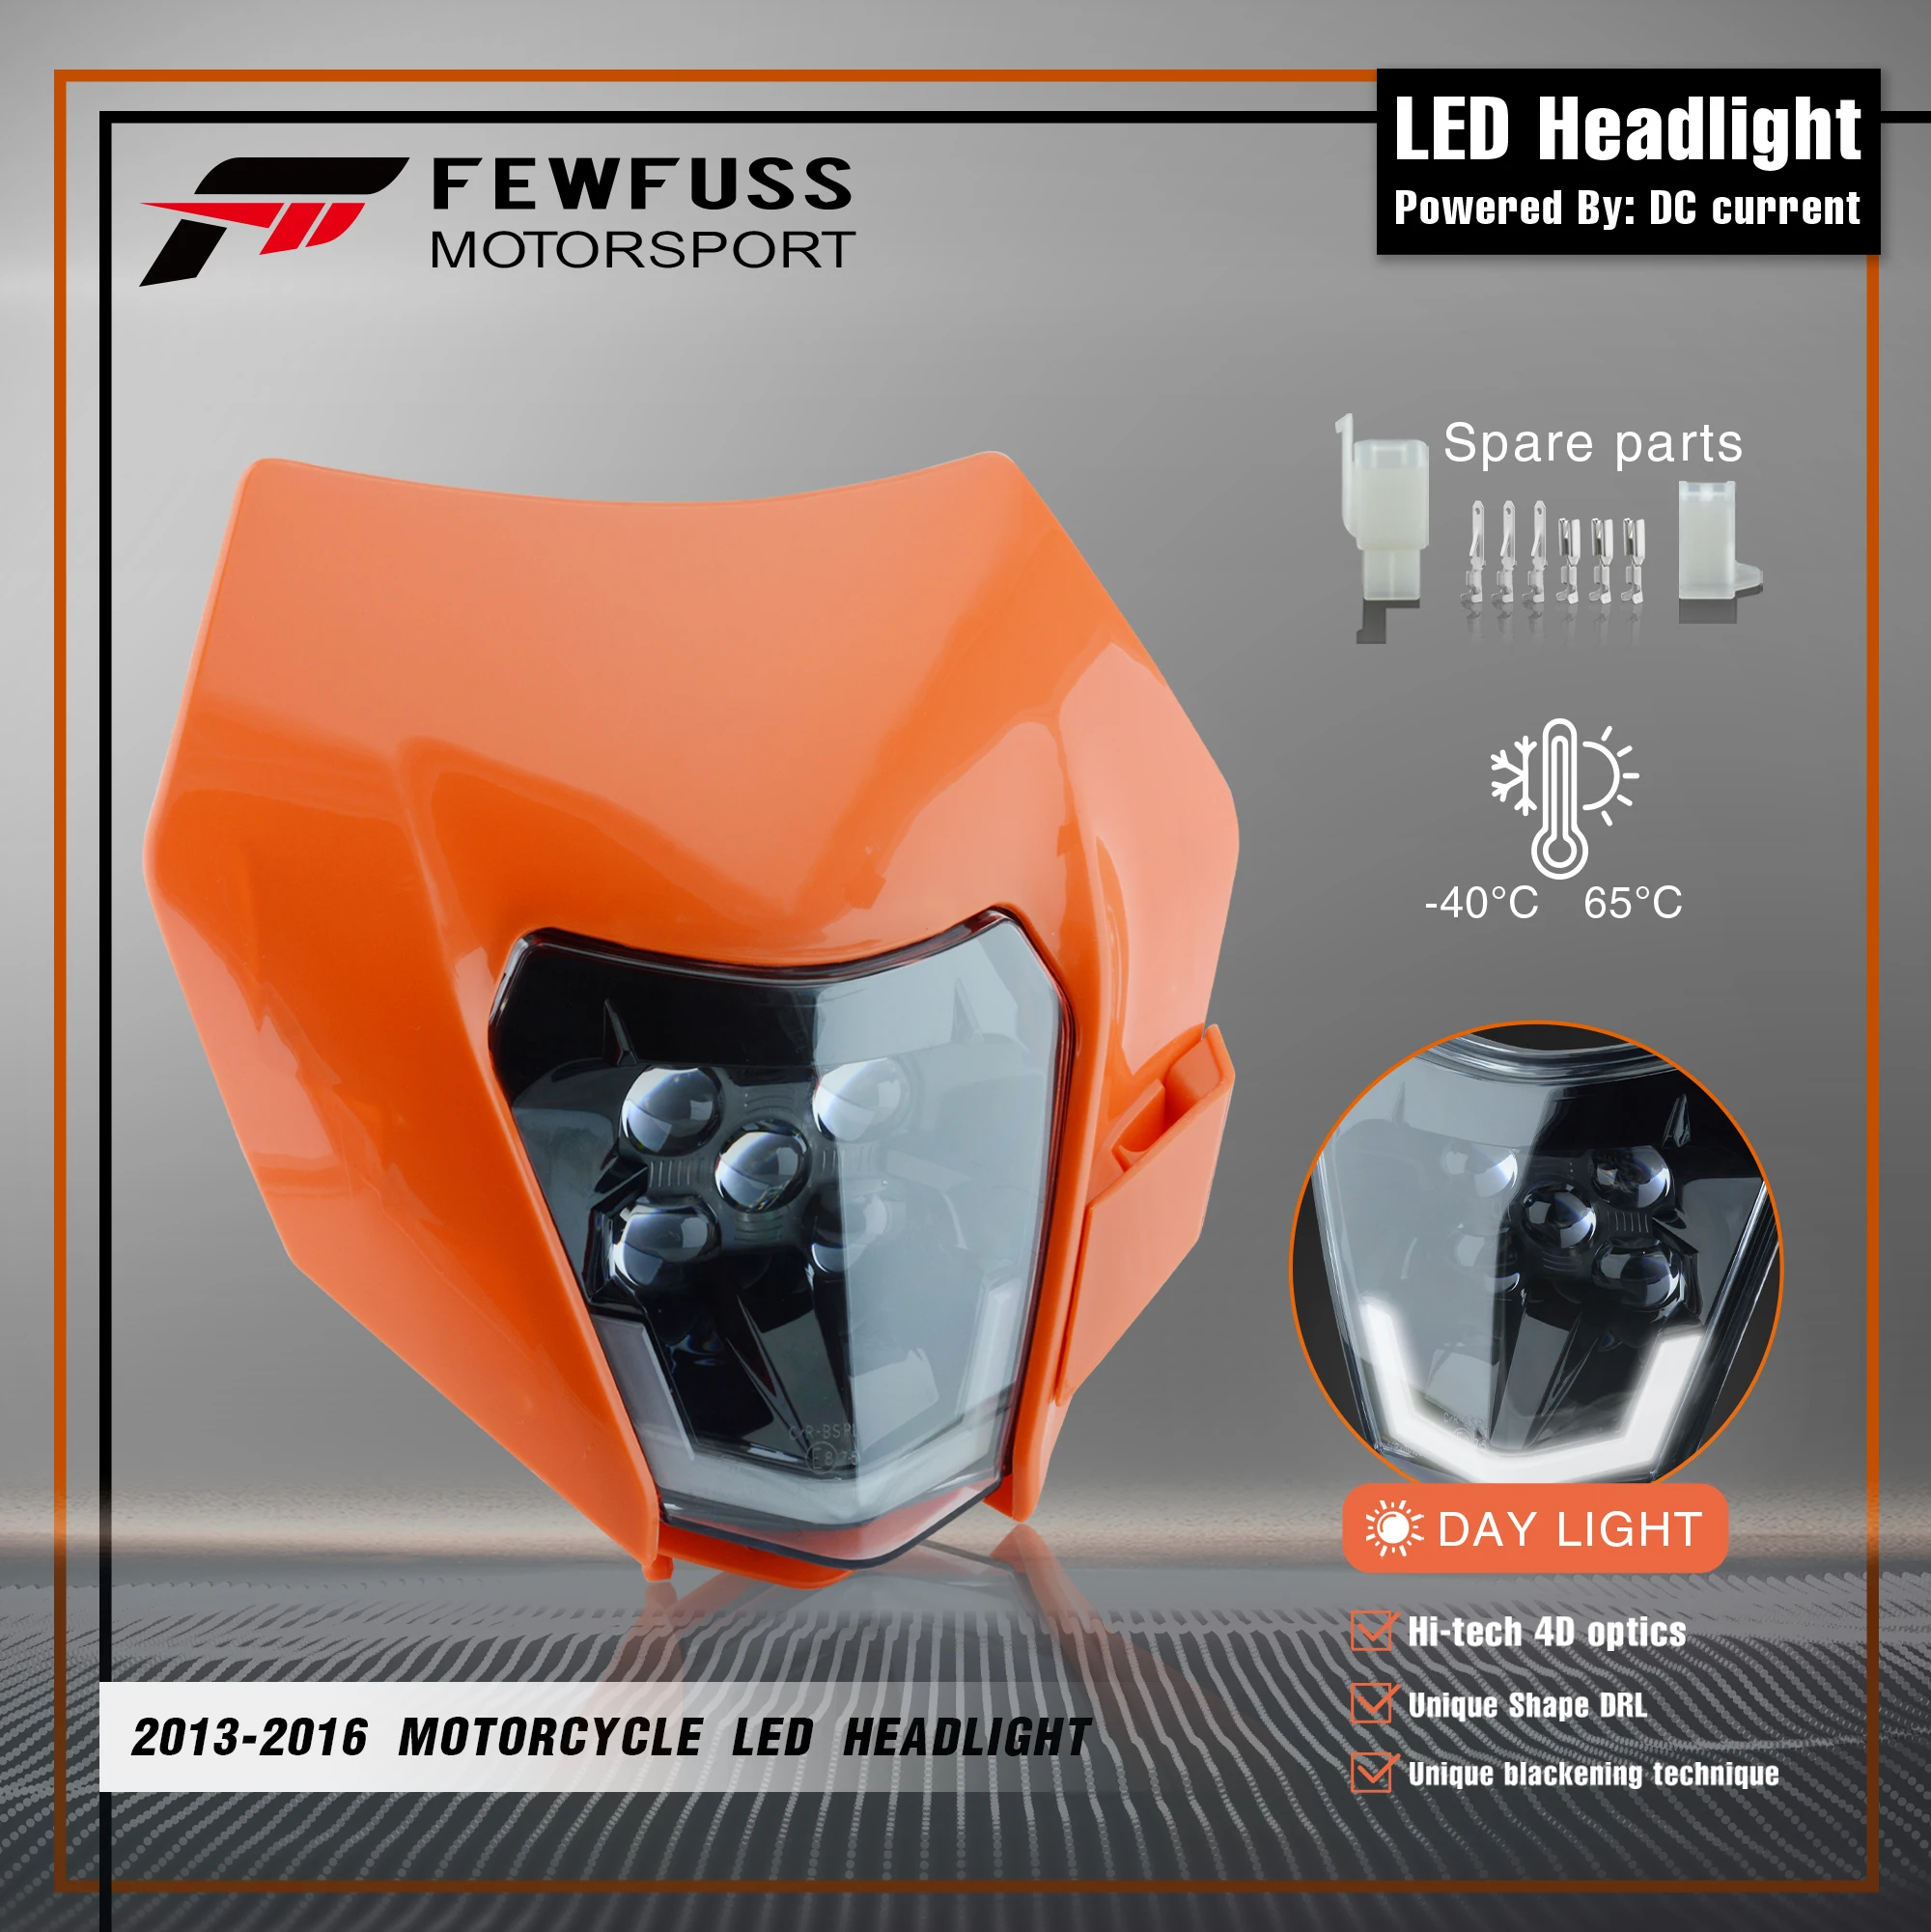 

Передсветильник фара для мотоцикла FEWFUSS, передсветильник РА обтекатель Supermoto для KTM EXC SXF MX, фара для кроссового велосипеда, эндуро, передняя ф...